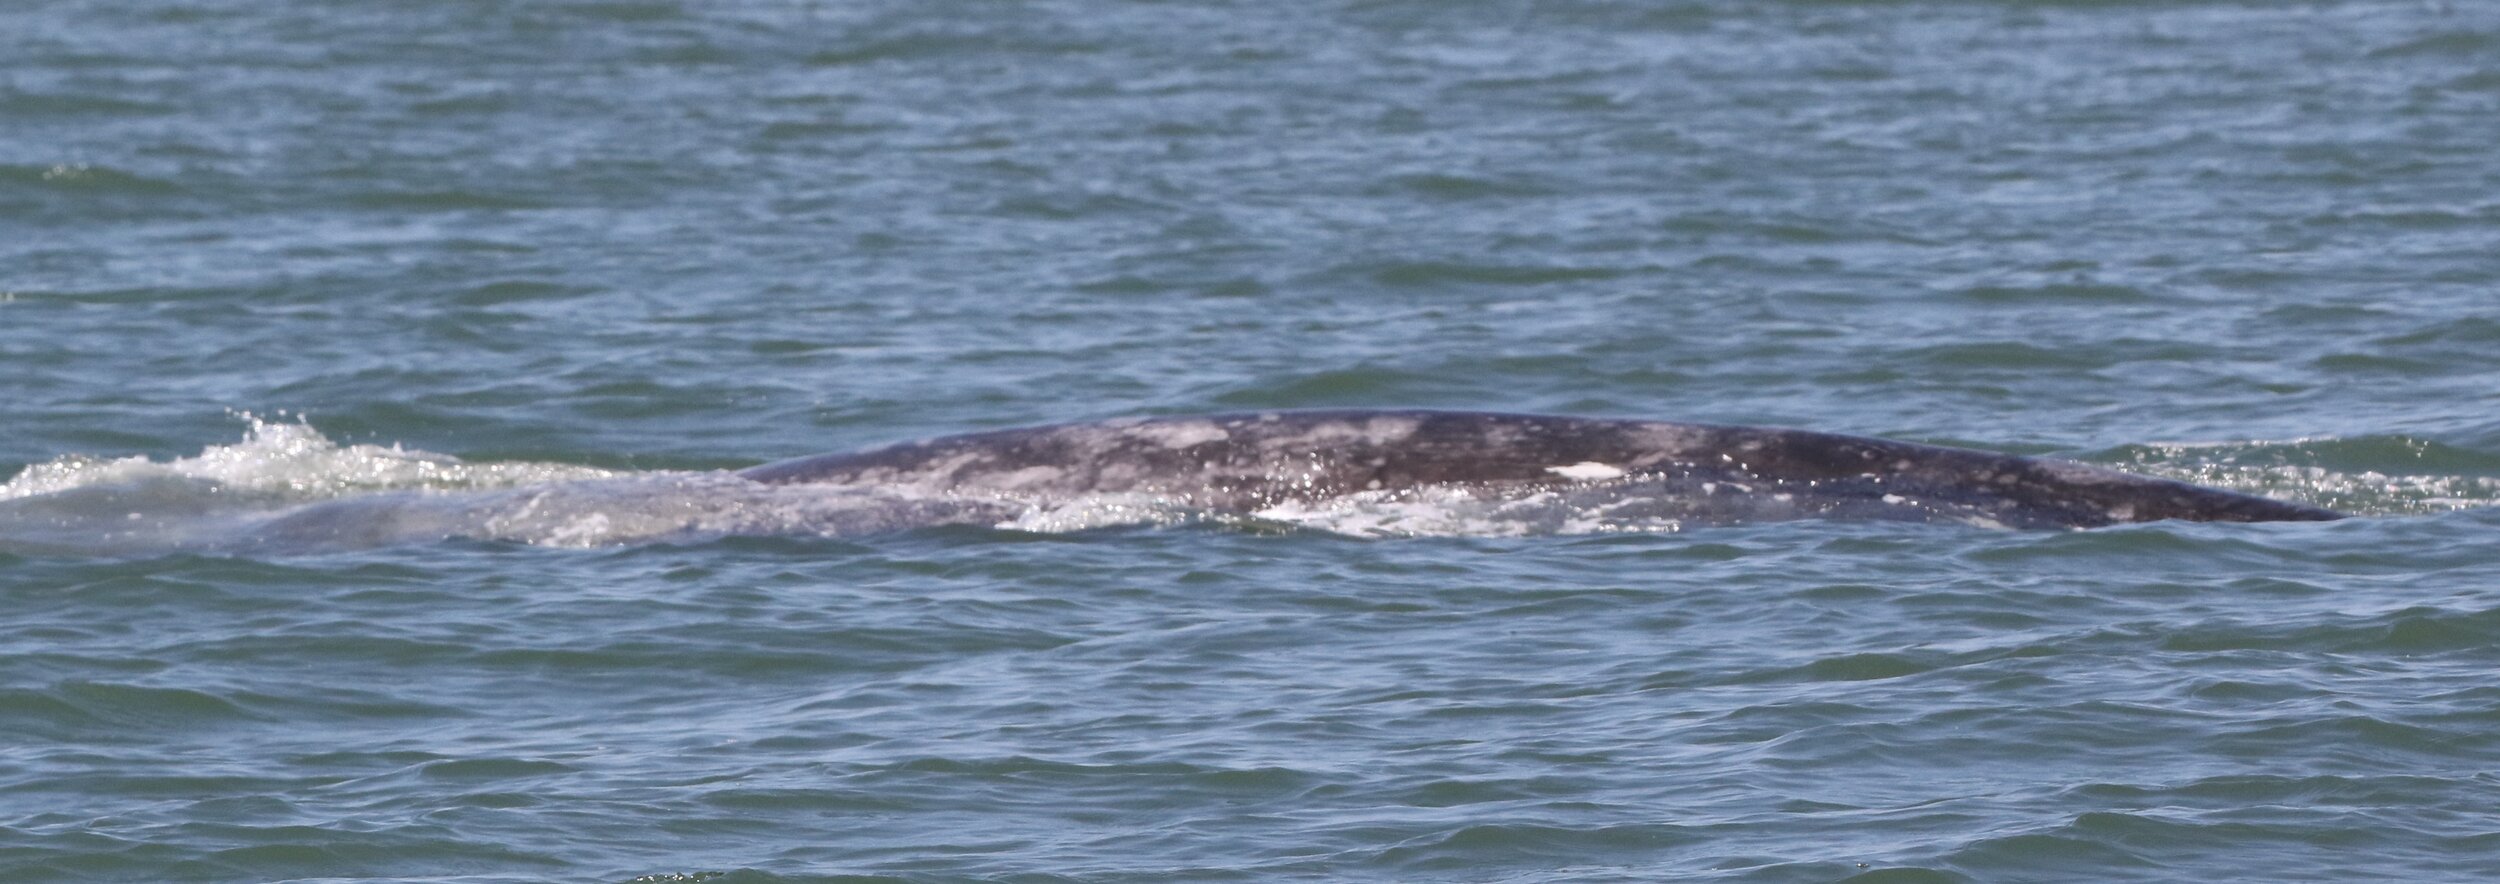  A gray whale feeding in San Francisco Bay.  Photos by Izzy Szczepaniak. 